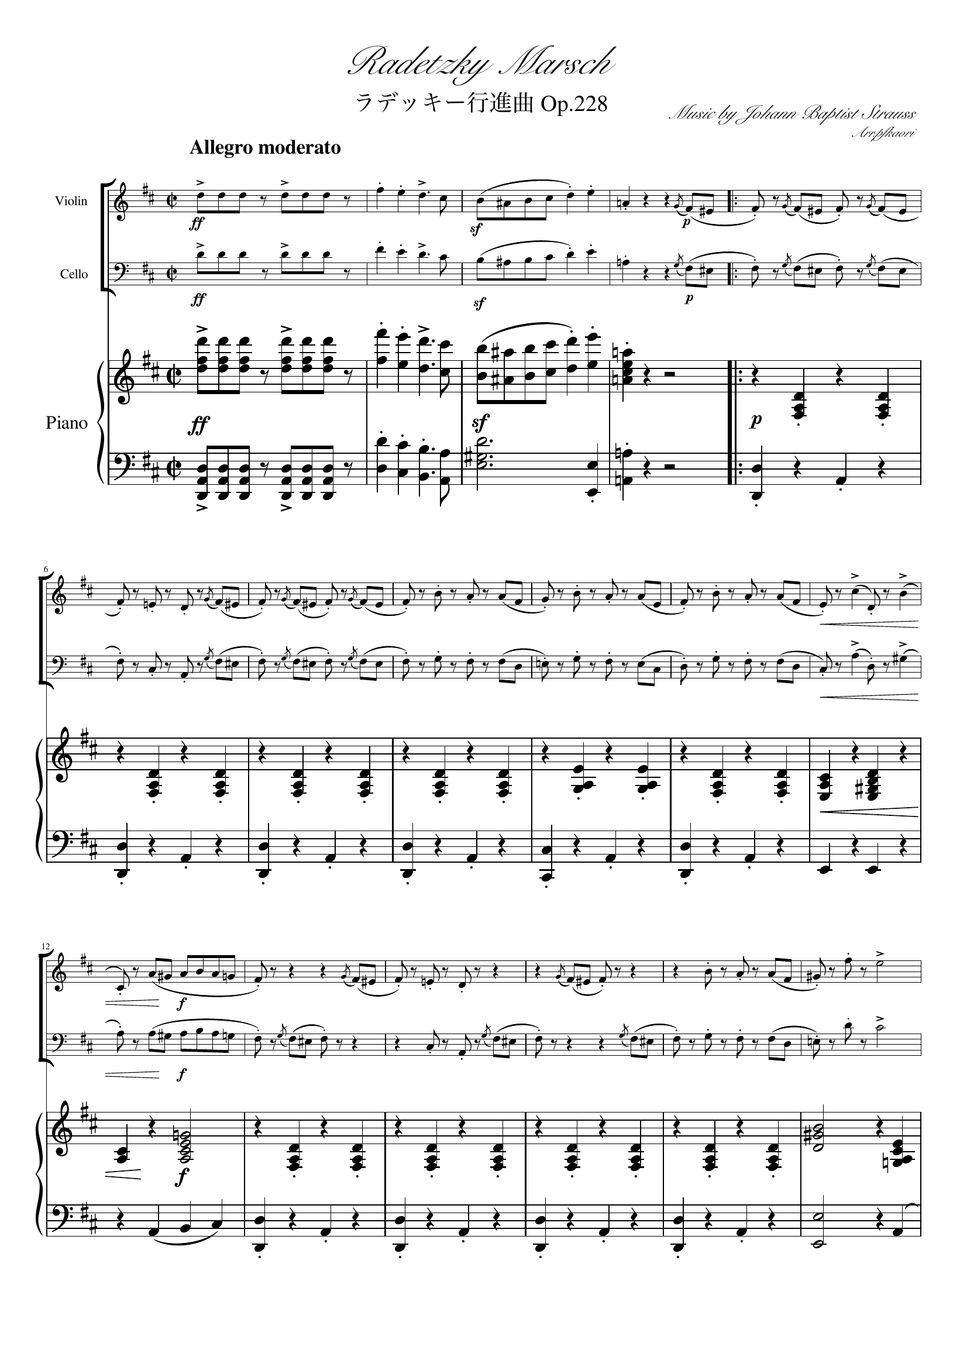 ヨハンシュトラウス1世 - ラデッキー行進曲 (D・ピアノトリオ/ヴァイオリン&チェロ) by pfkaori